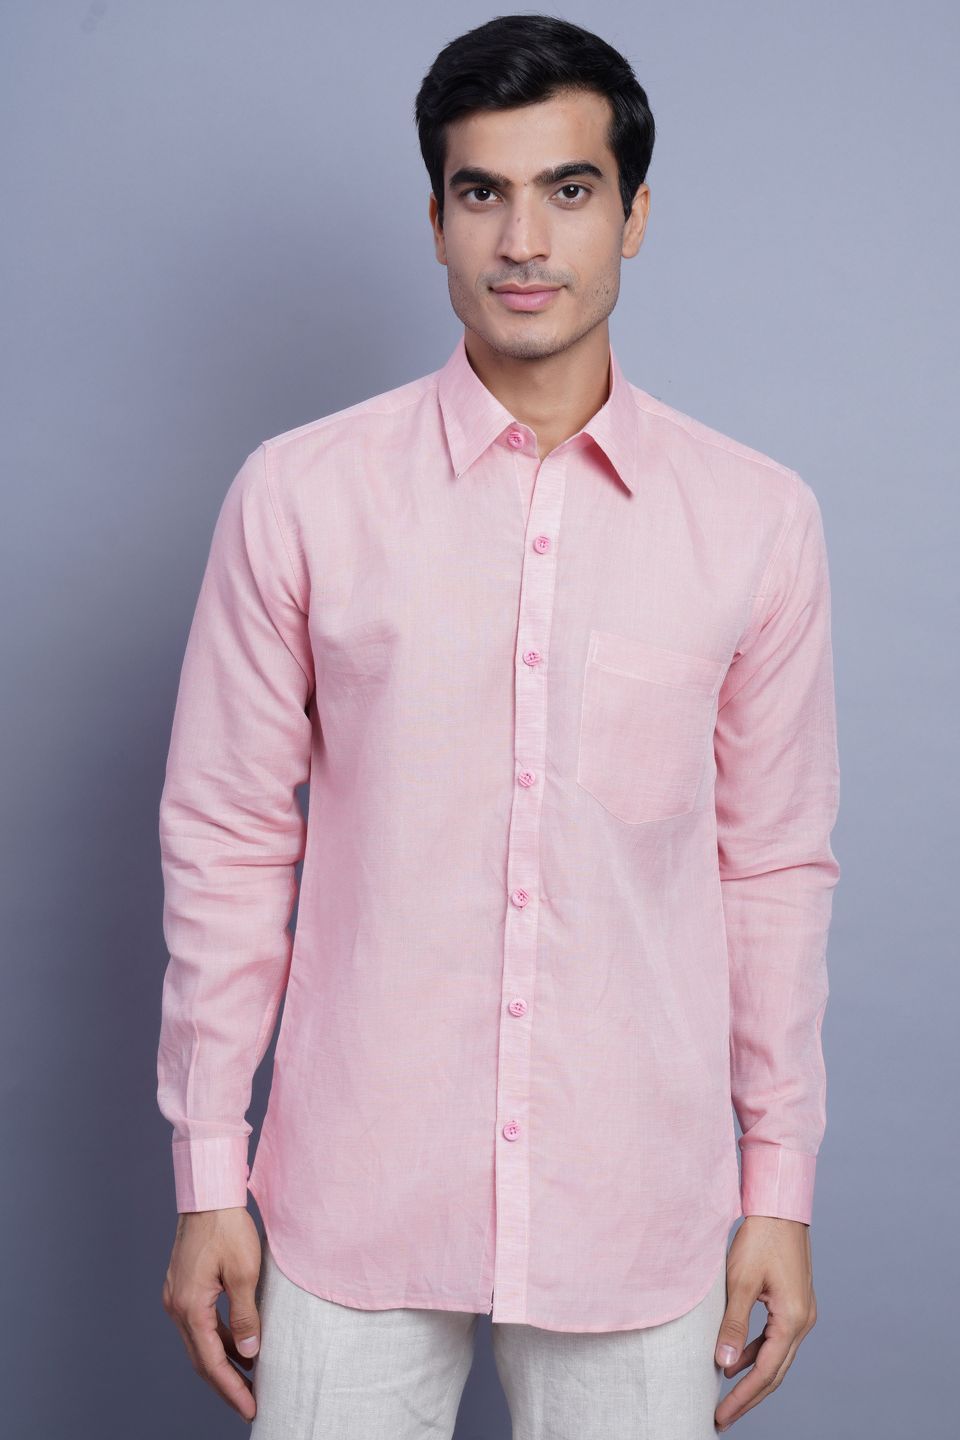 Wintage Men's Linen Casual Shirt: Light Pink